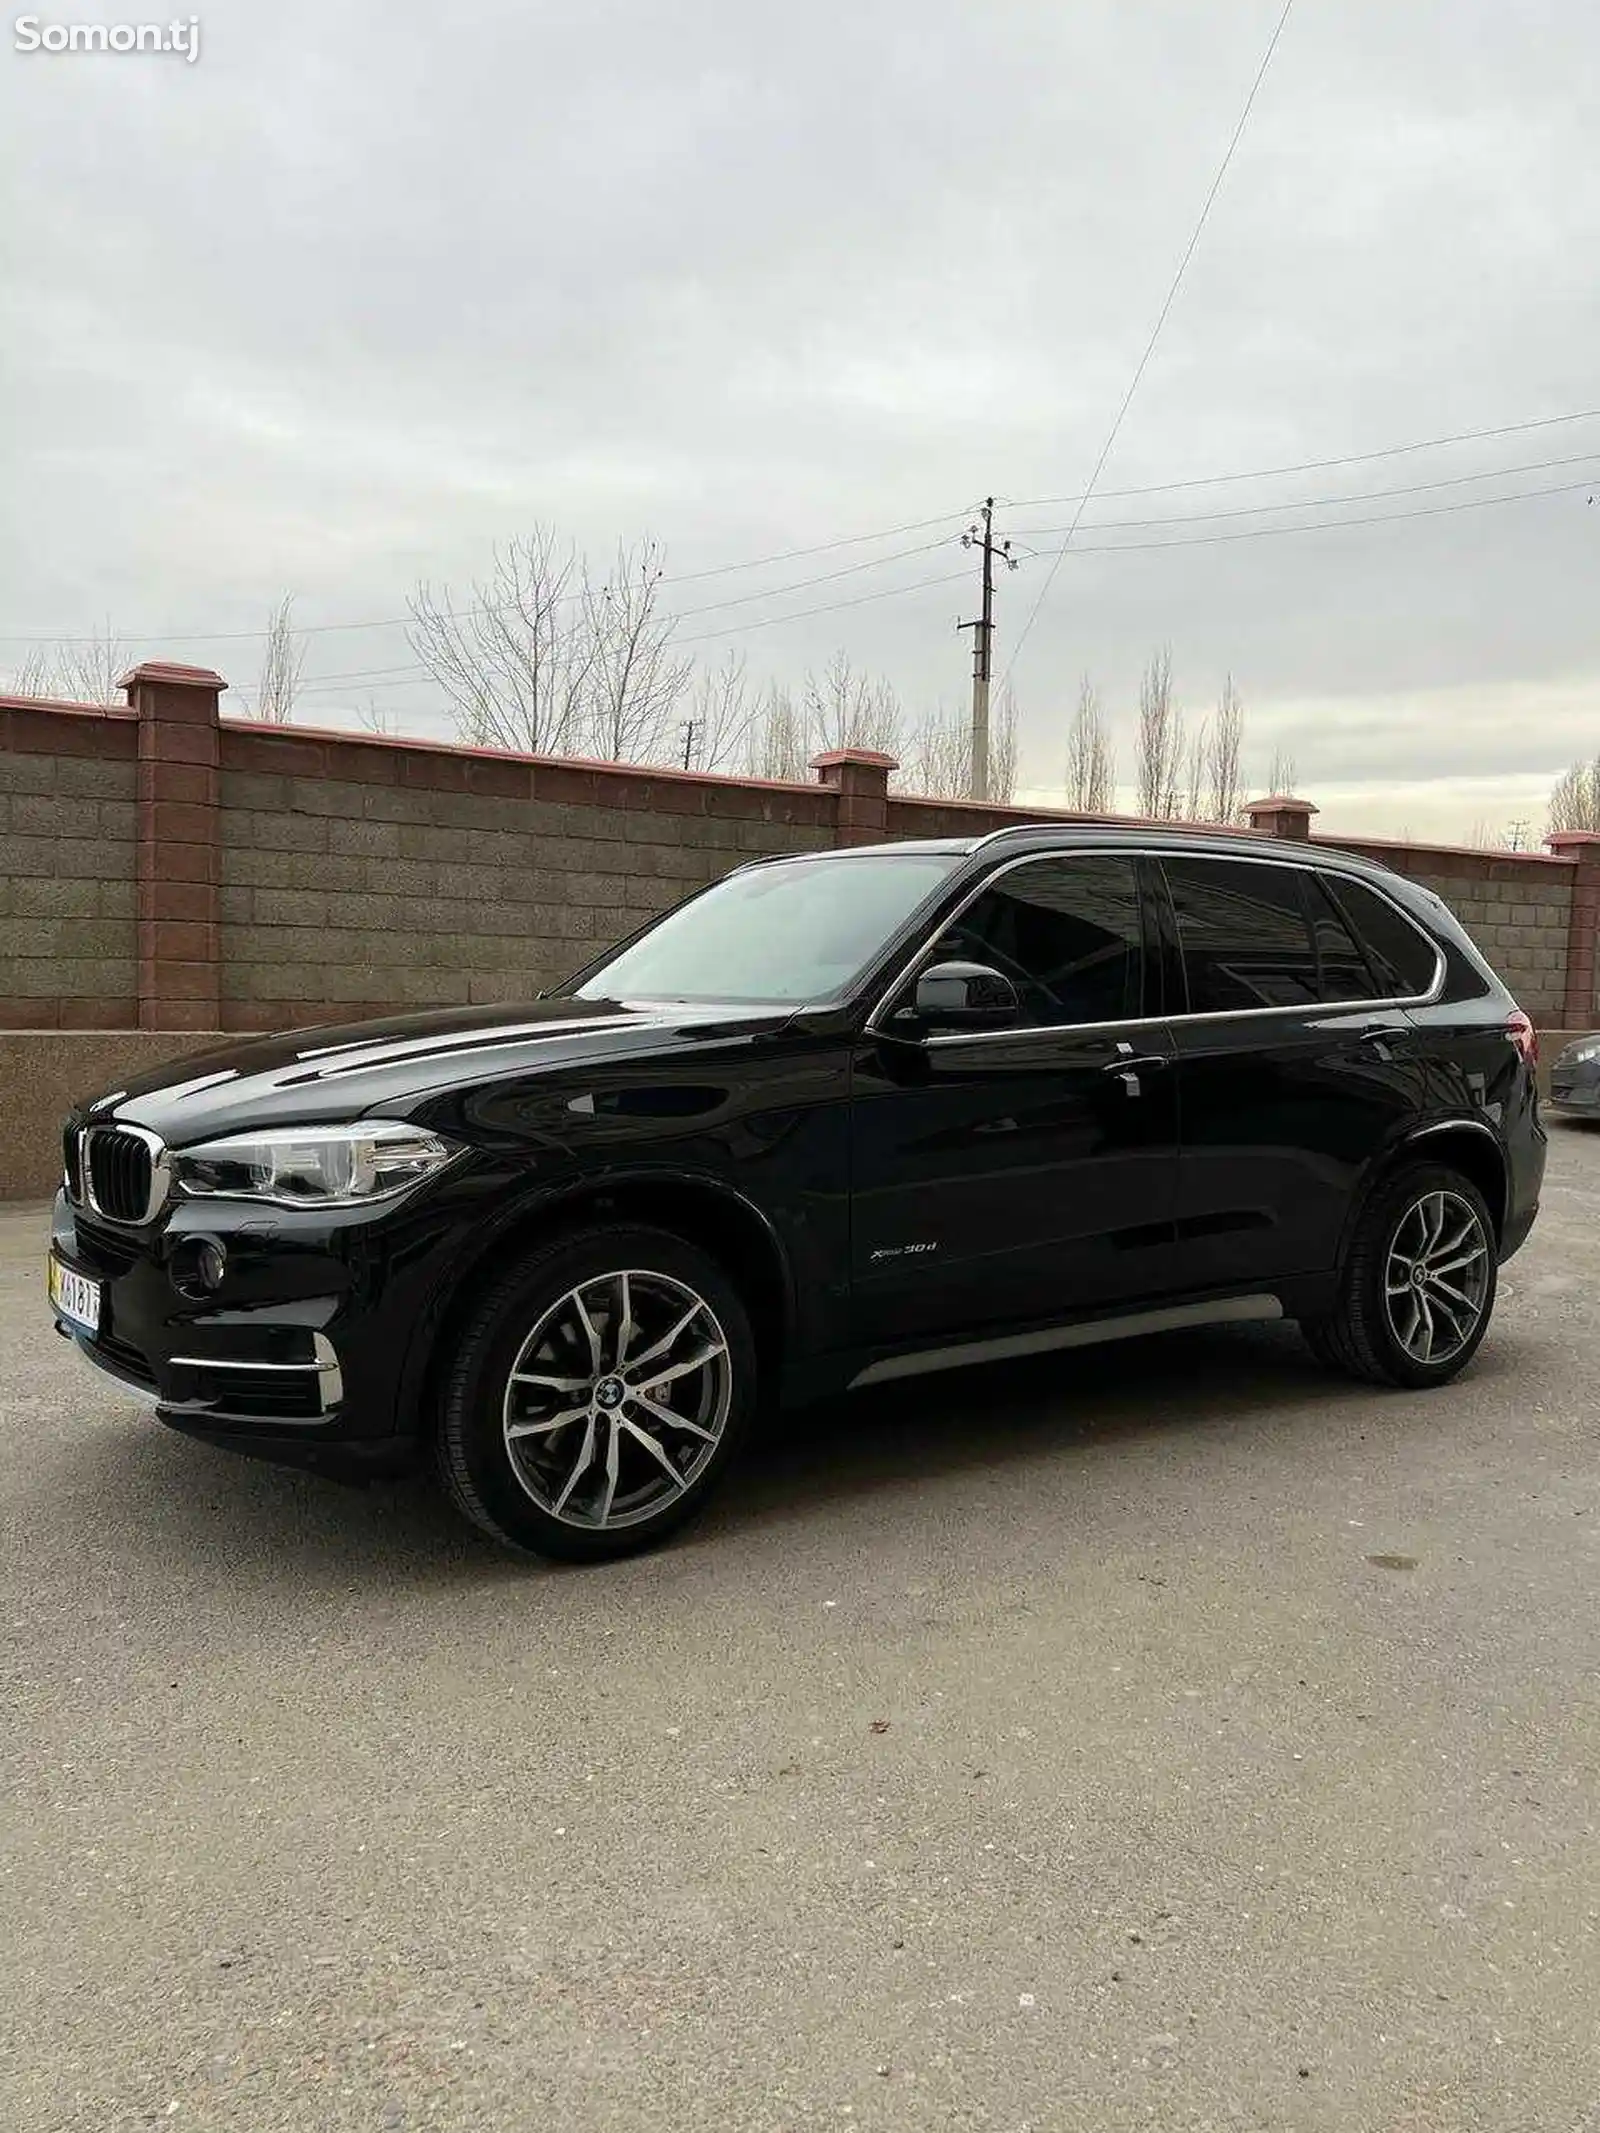 BMW X5, 2015-12